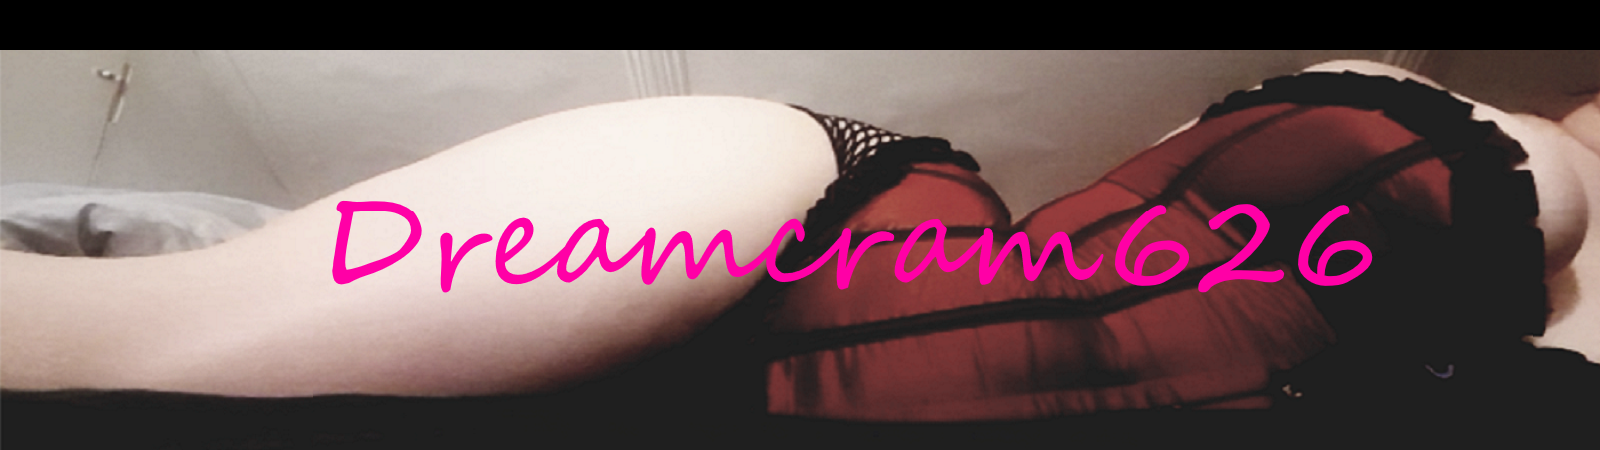 Cover photo of Dreamcream626